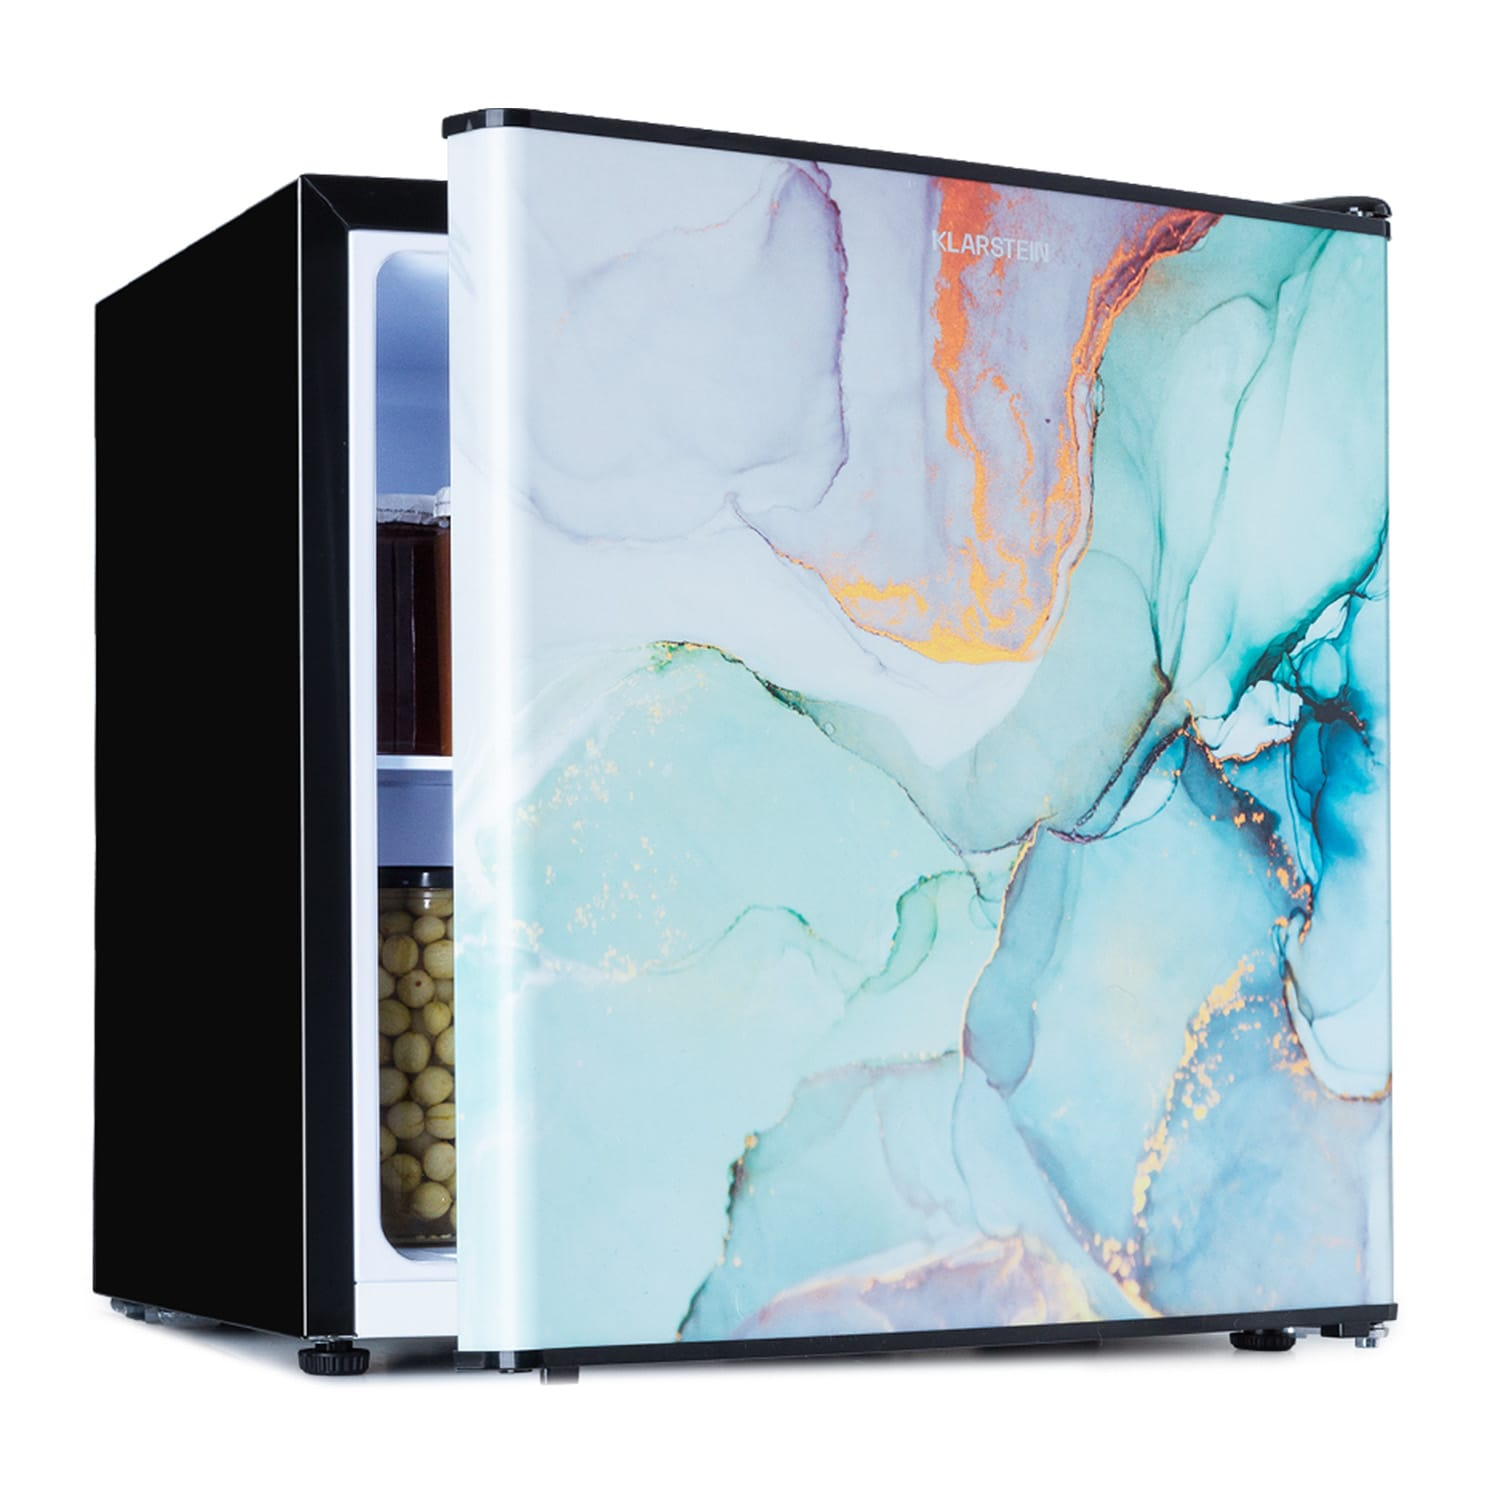 KLARSTEIN CoolArt 45L hoch, (F, Multicolor) Mini-Kühlschrank 44,5 cm